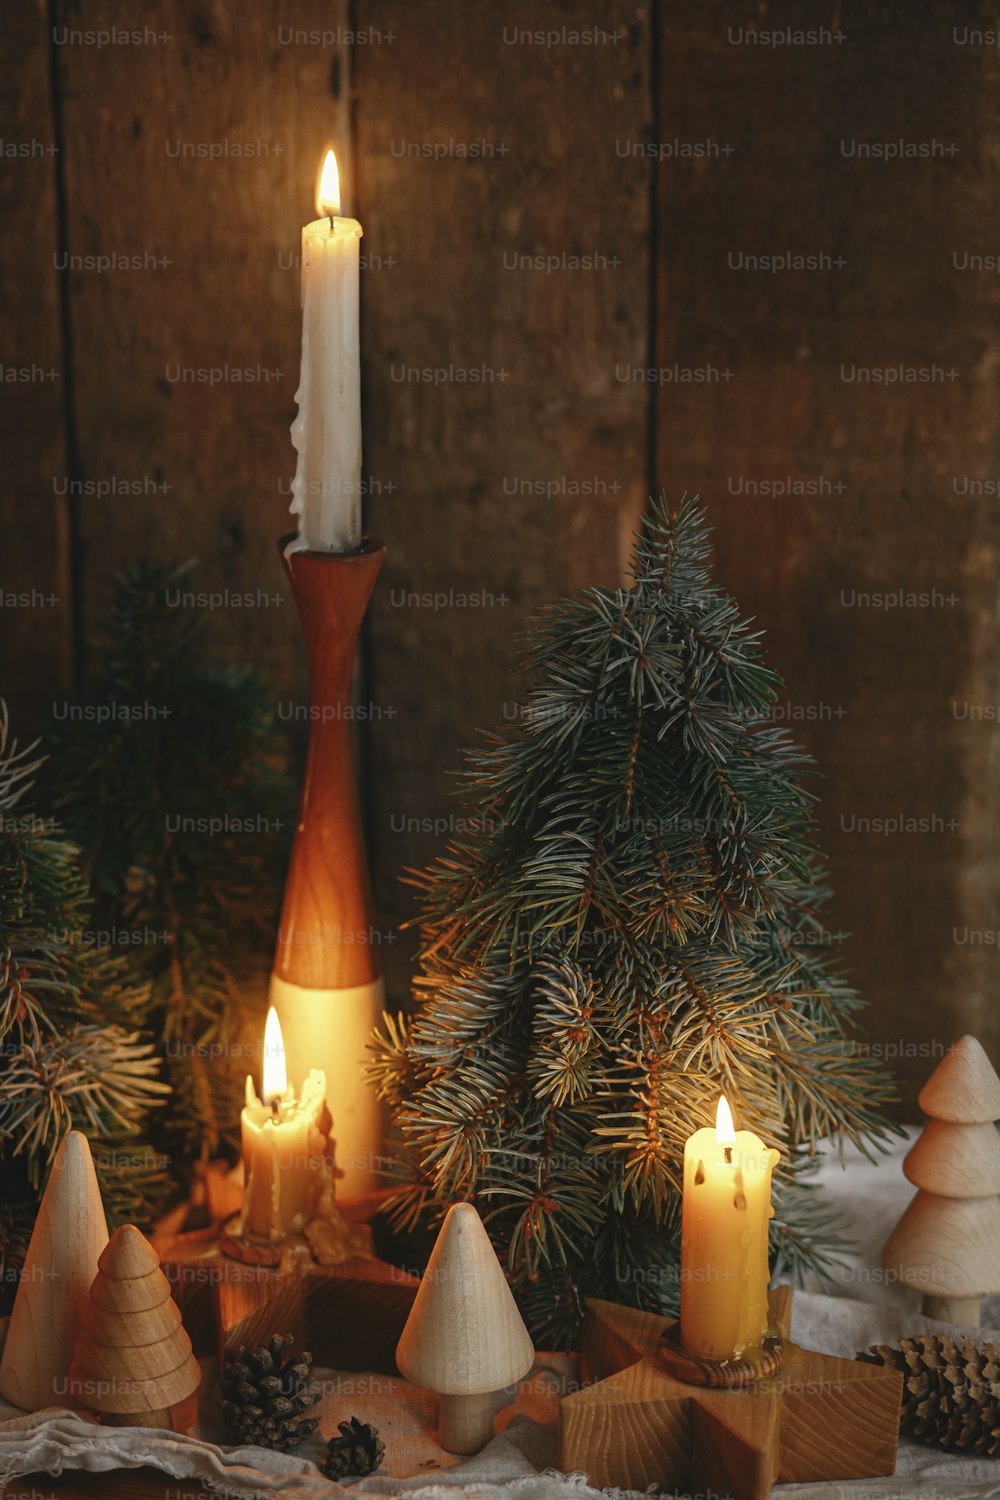 Avvento di Natale. Eleganti candele di Natale accese, pini e pigne decorazioni moderne su sfondo rustico in legno vecchio in sala scandinava serale. Momento atmosferico